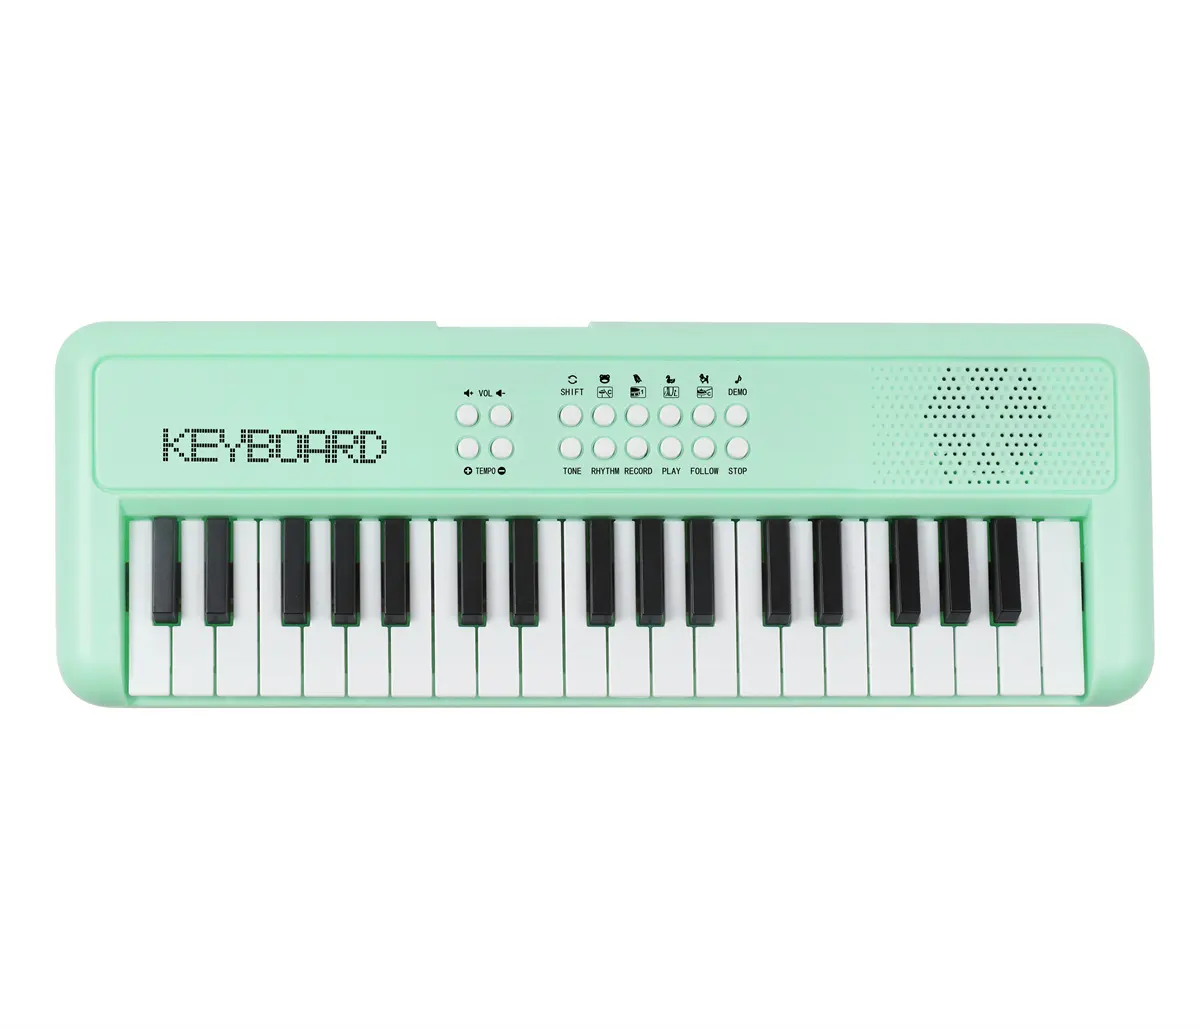 Лучшая продажа игрушечная пластиковая электронная органная клавиатура пианино с 37 клавишами зеленого цвета Китайская Игрушка фортепианная музыкальная клавиатура для детей